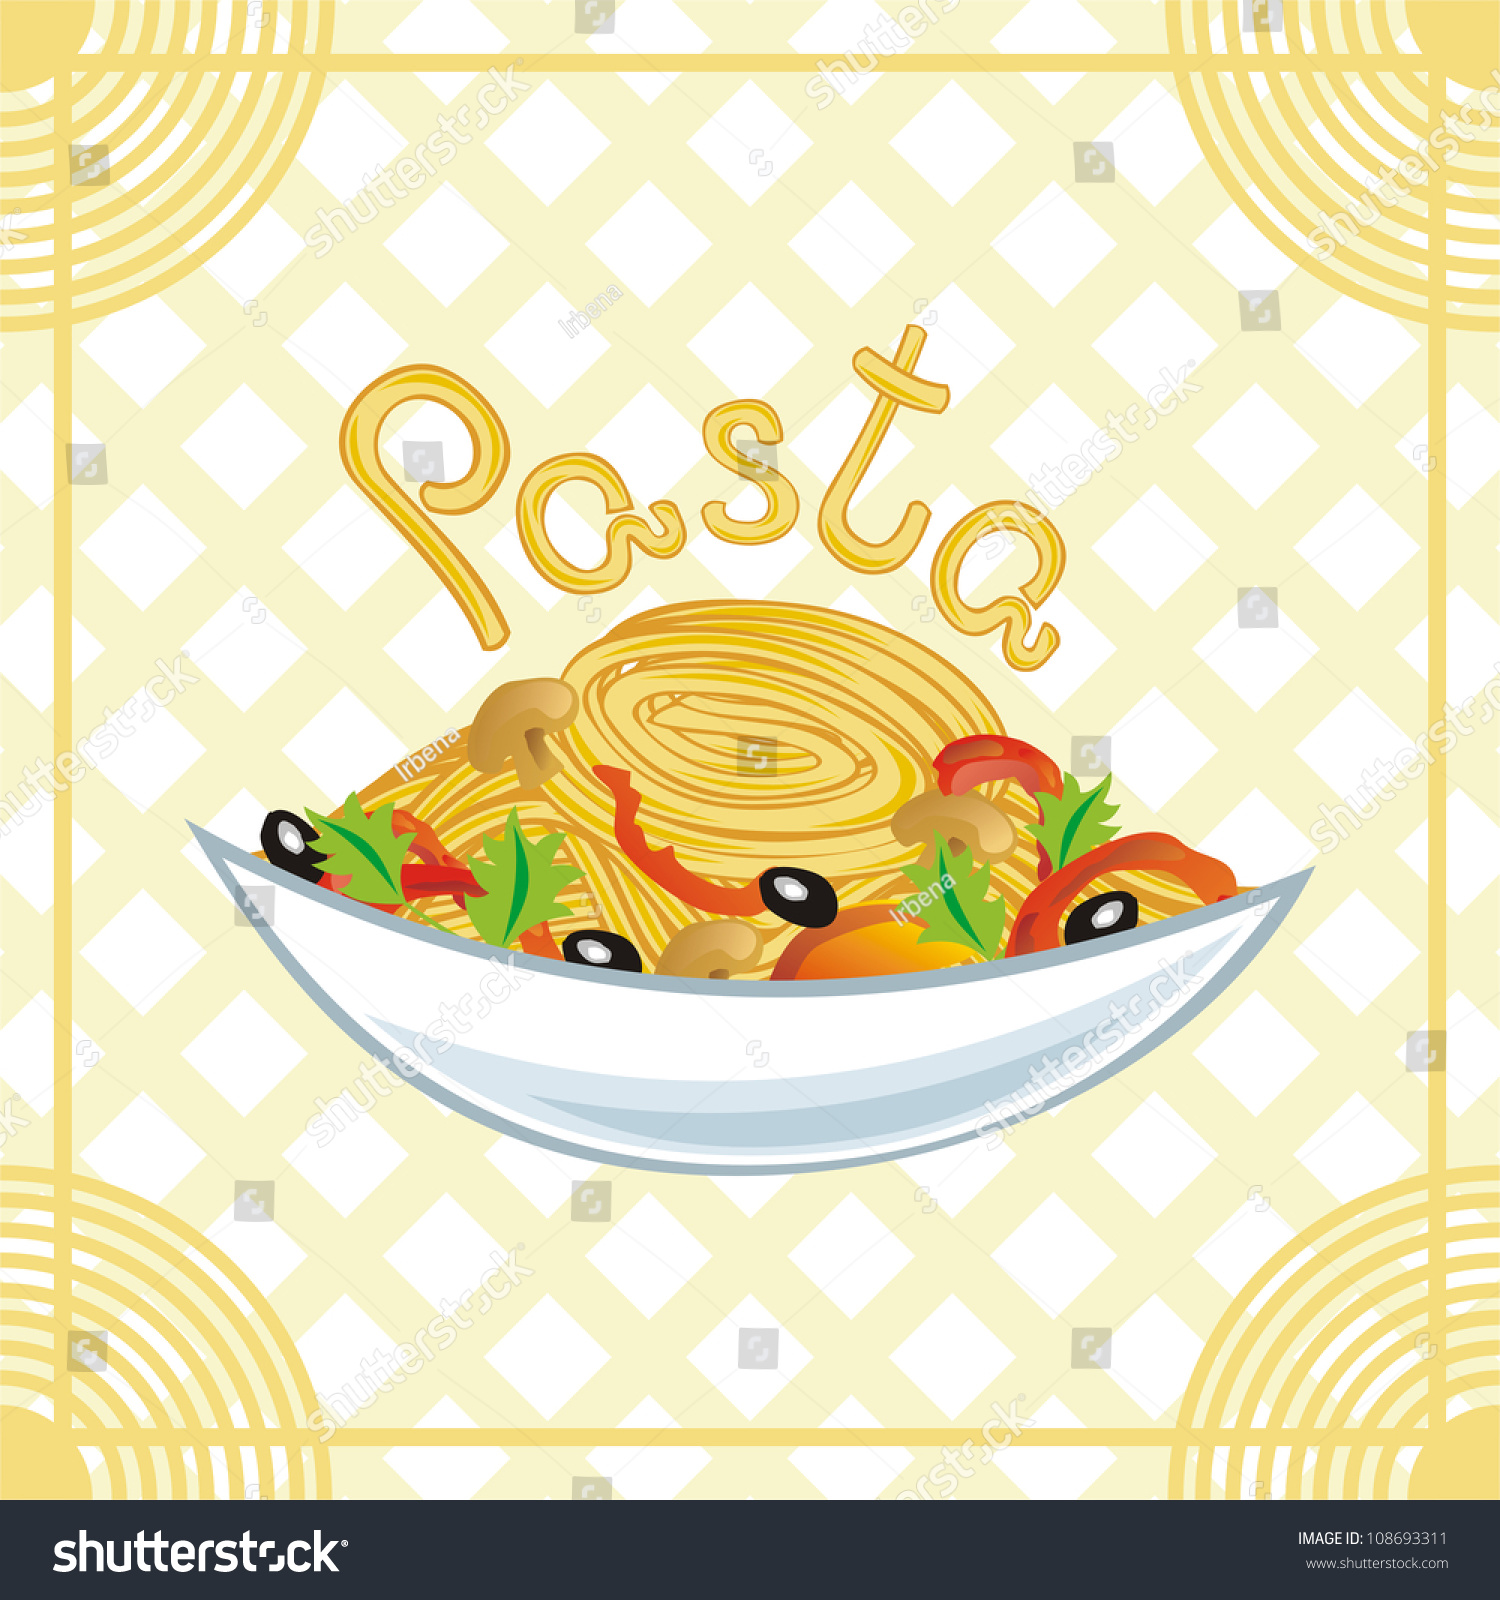 Vector Illustration Of Pasta - 108693311 : Shutterstock